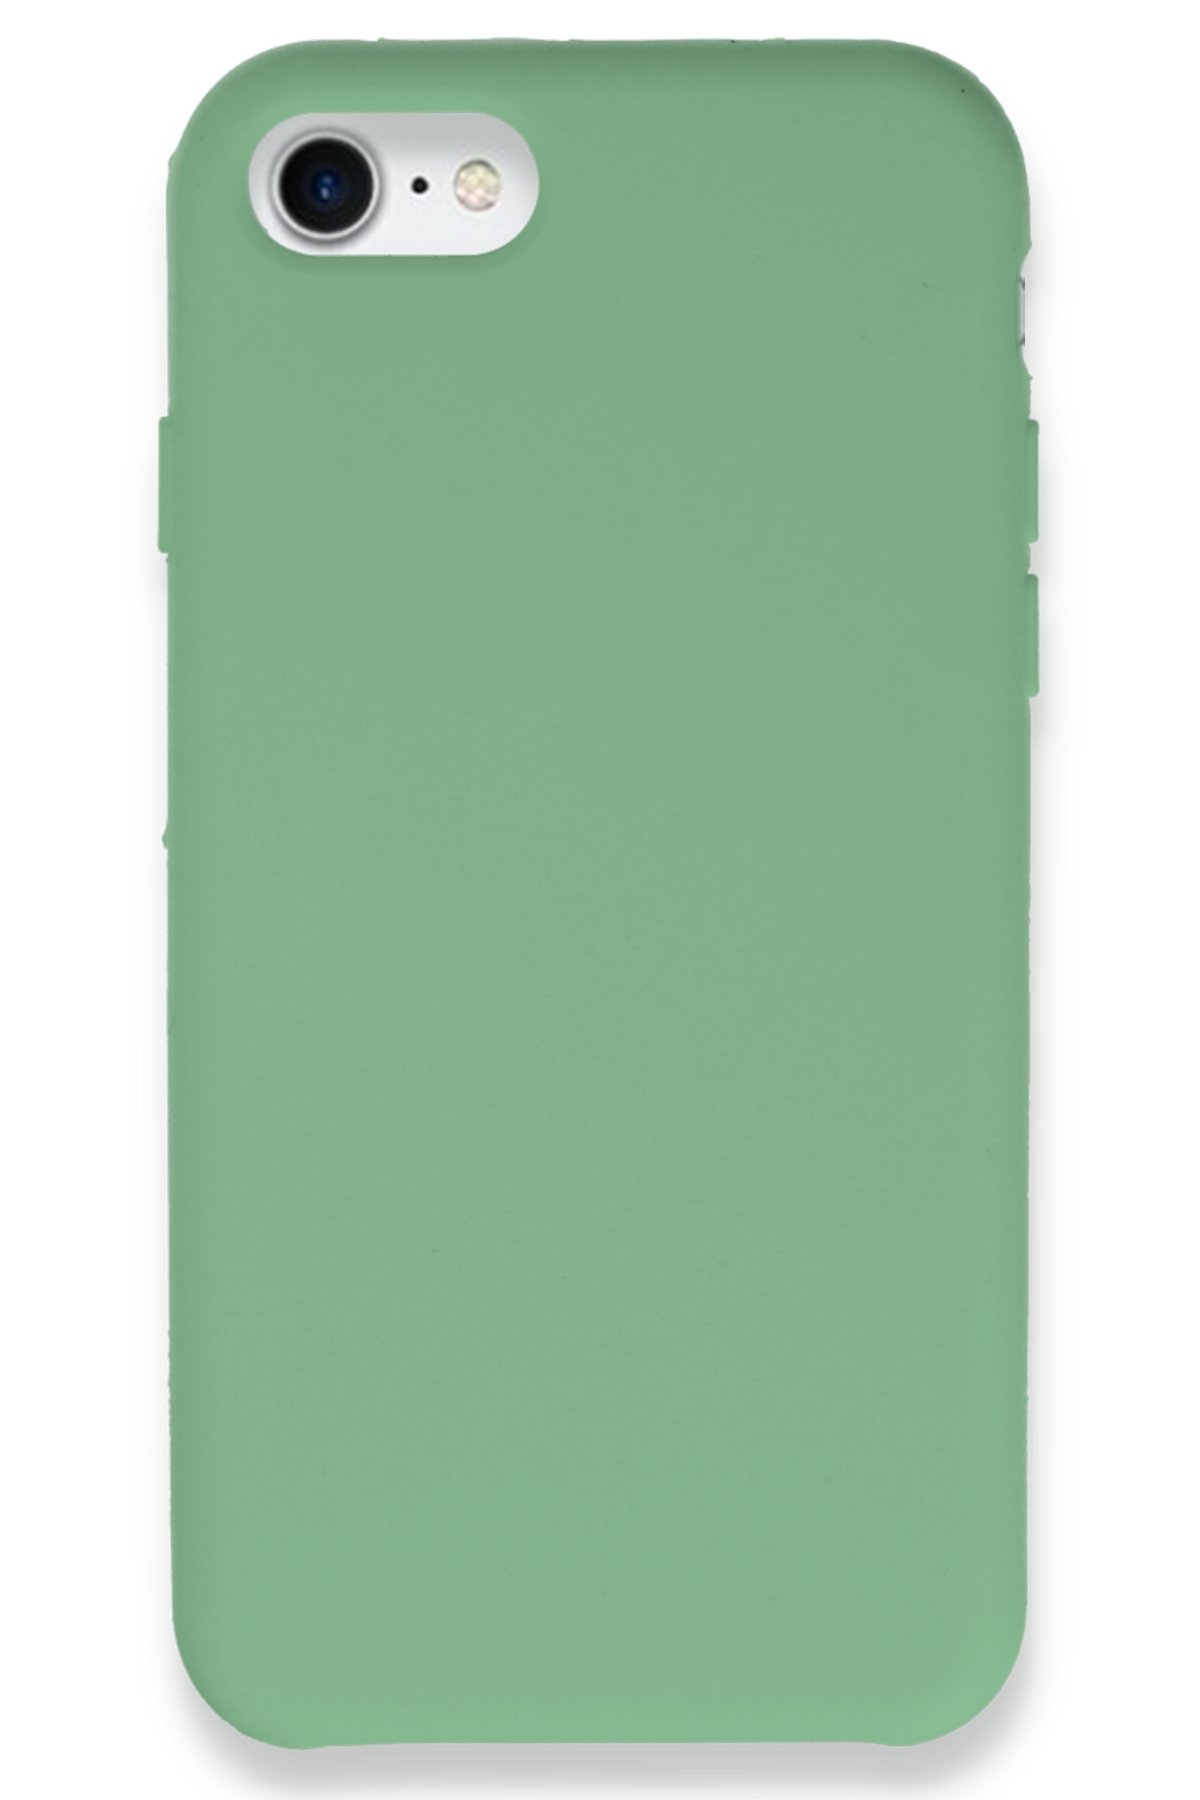 Newface iPhone SE 2020 Kılıf Zuma Kartvizitli Yüzüklü Silikon - Yeşil